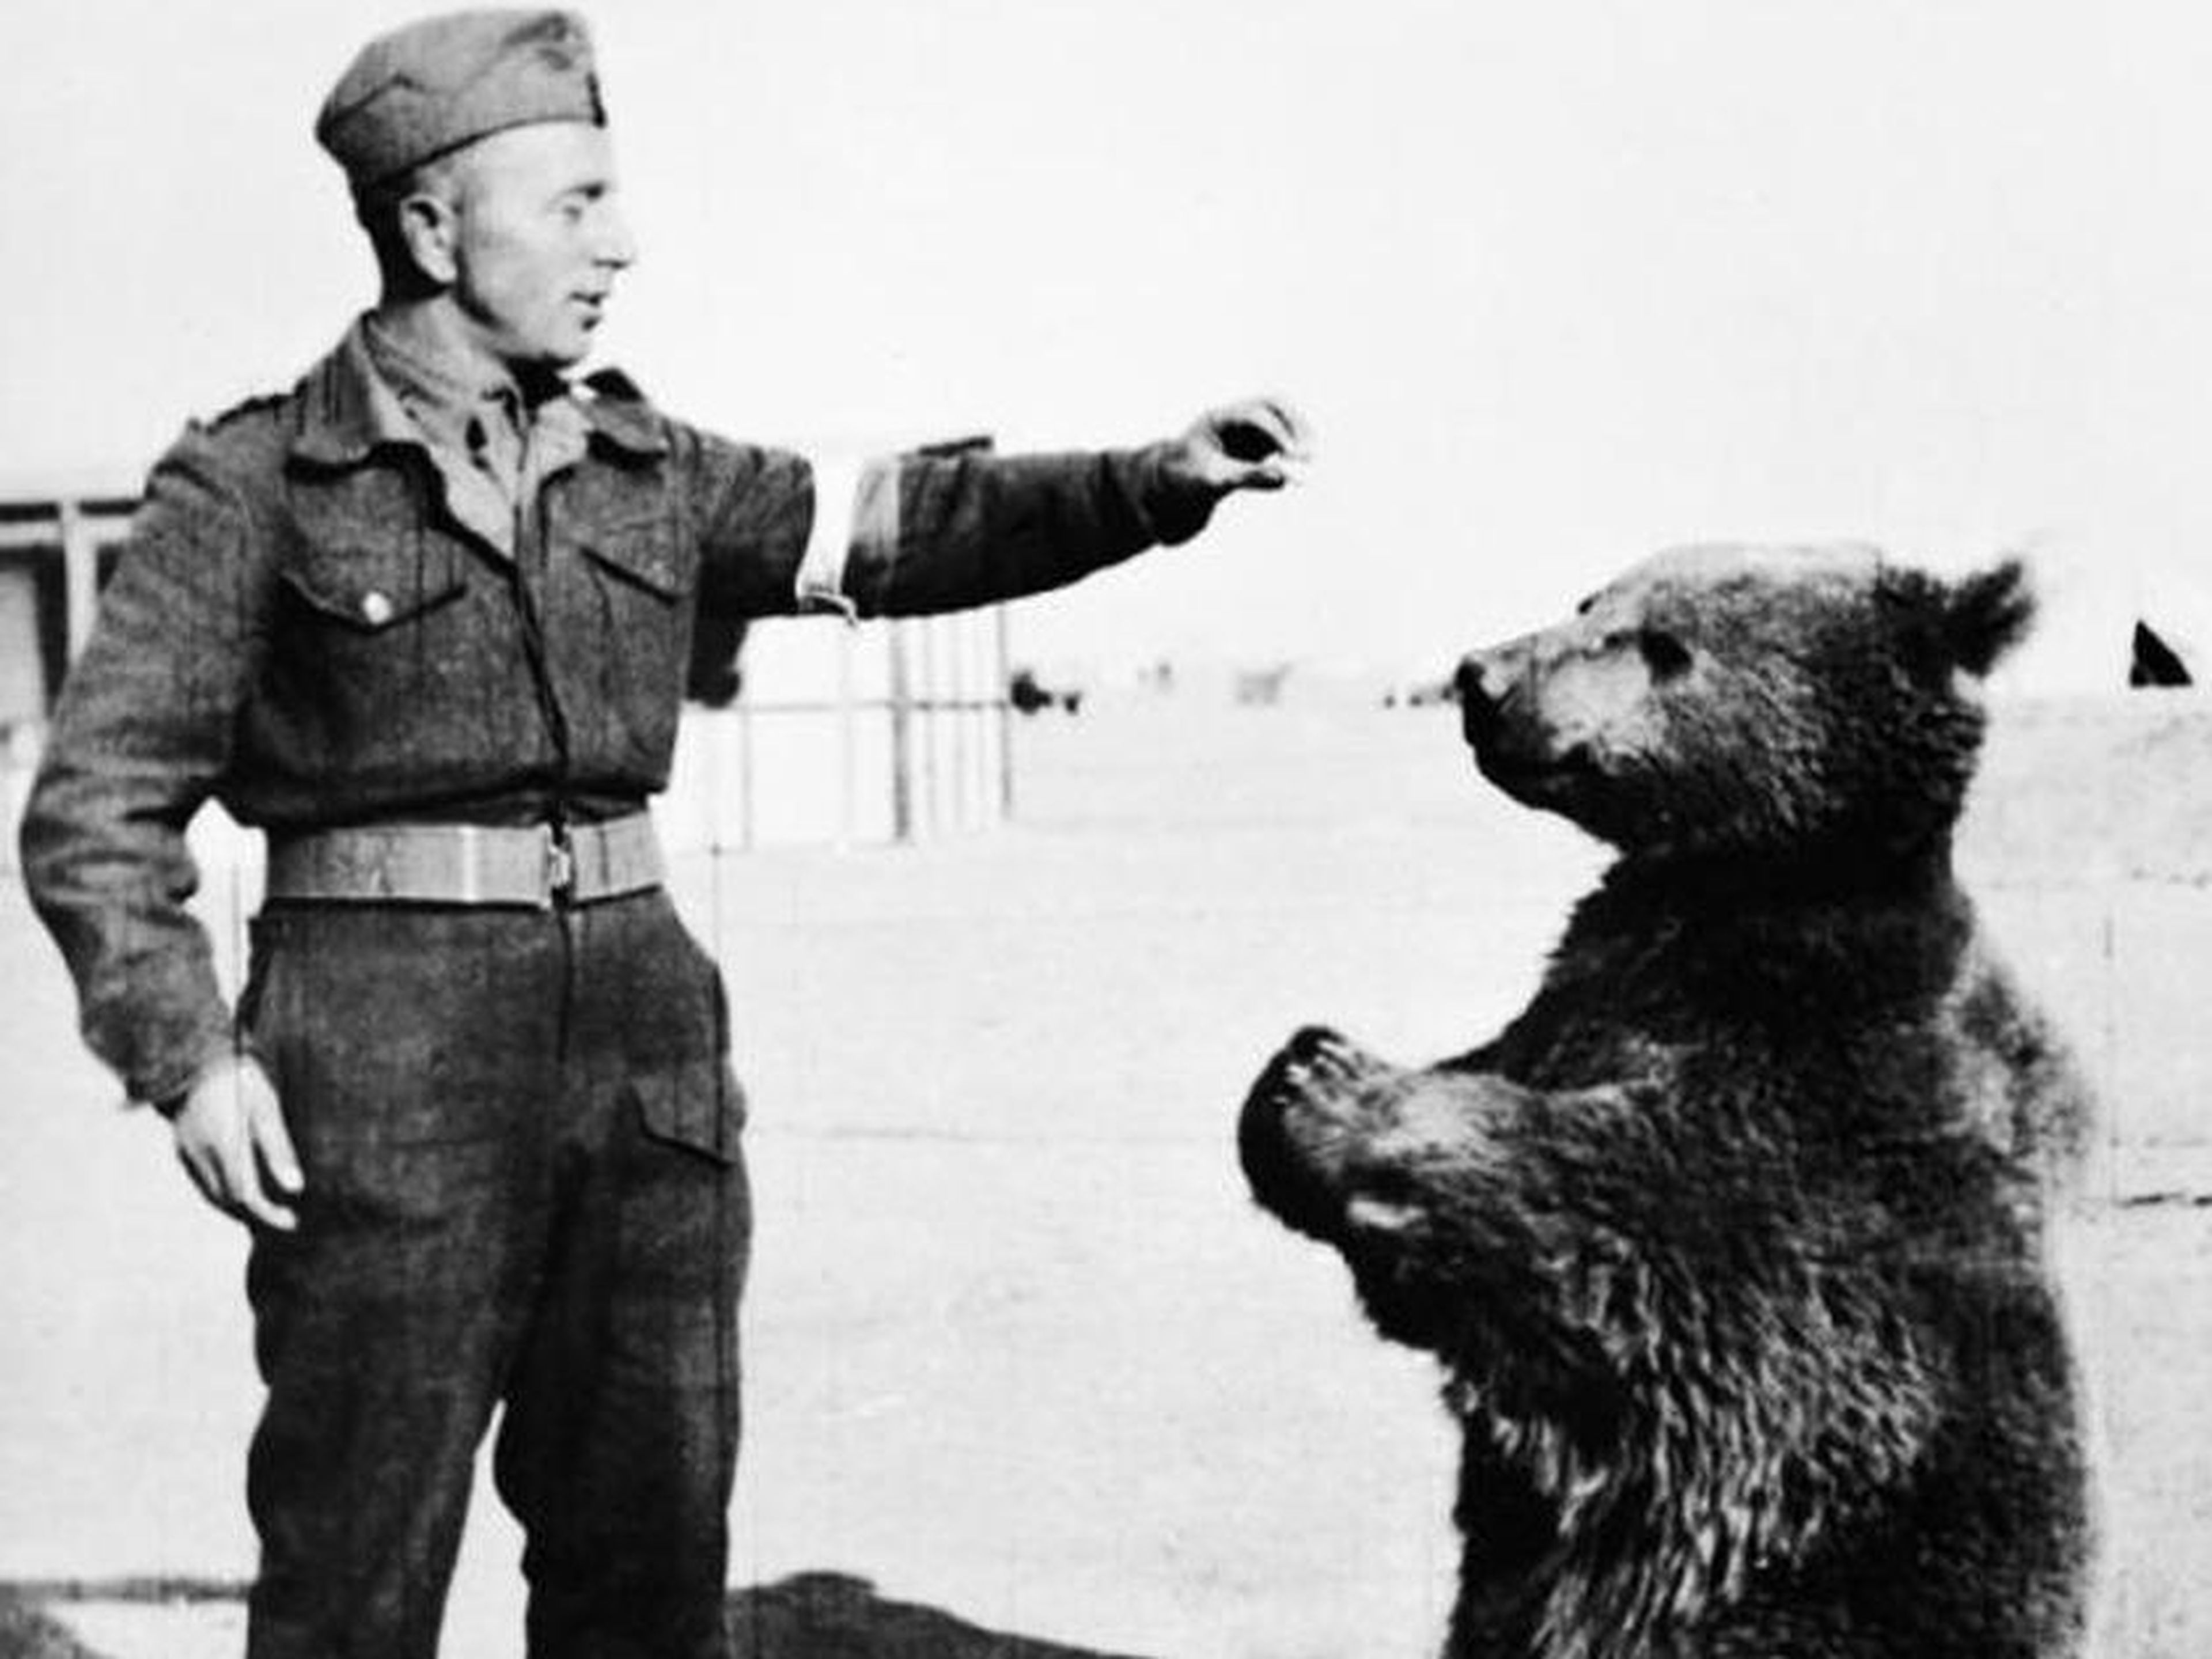 Wojtek the bear.